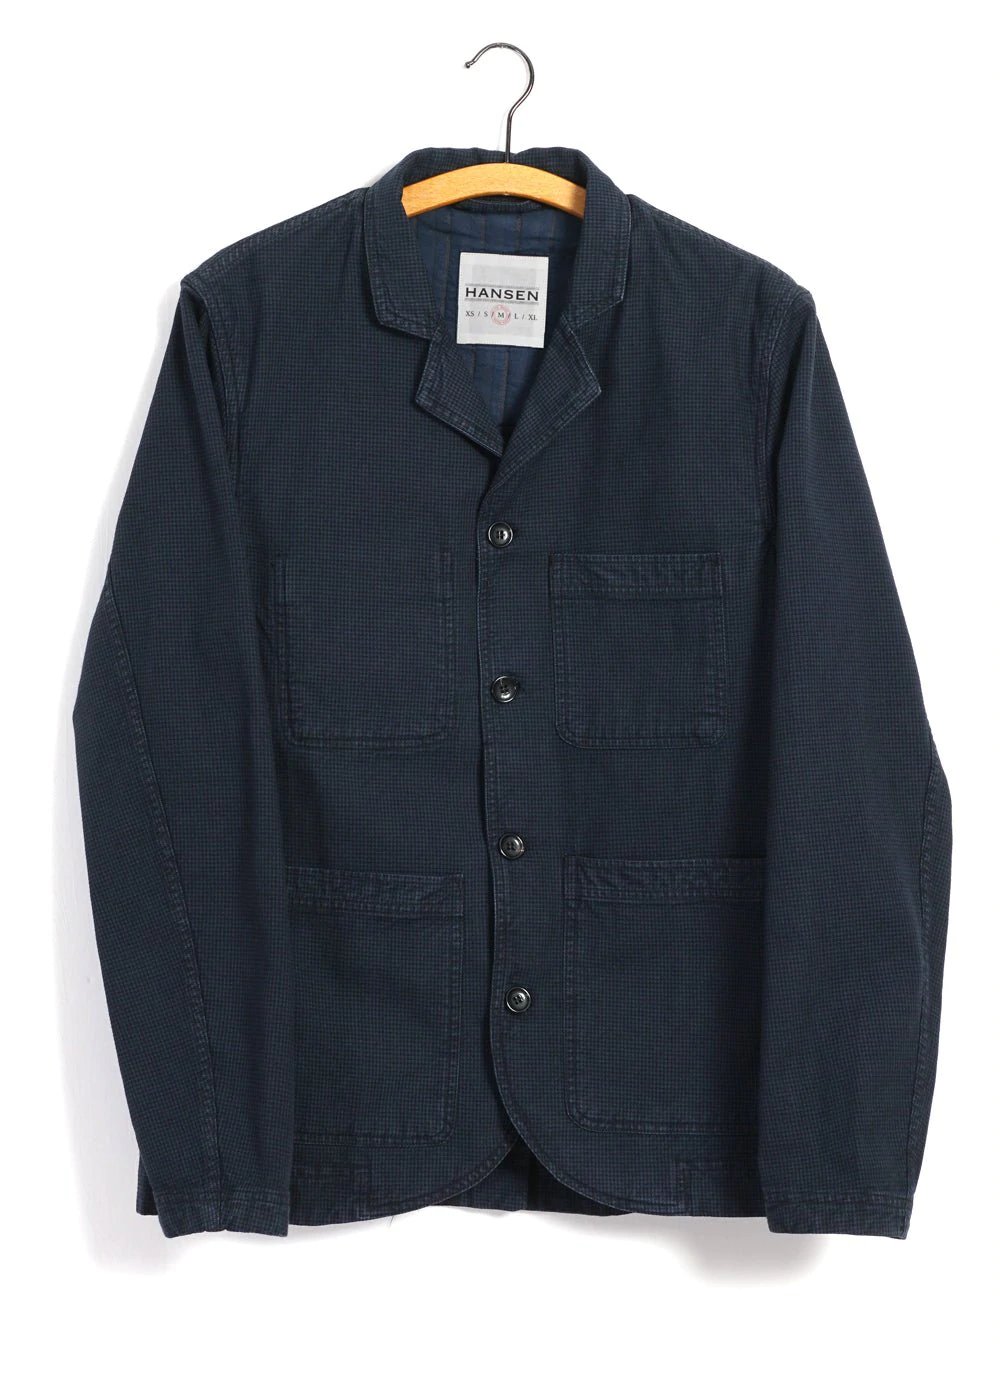 Hansen Garments NICOLAI | Informal 4-button Blazer | black navy